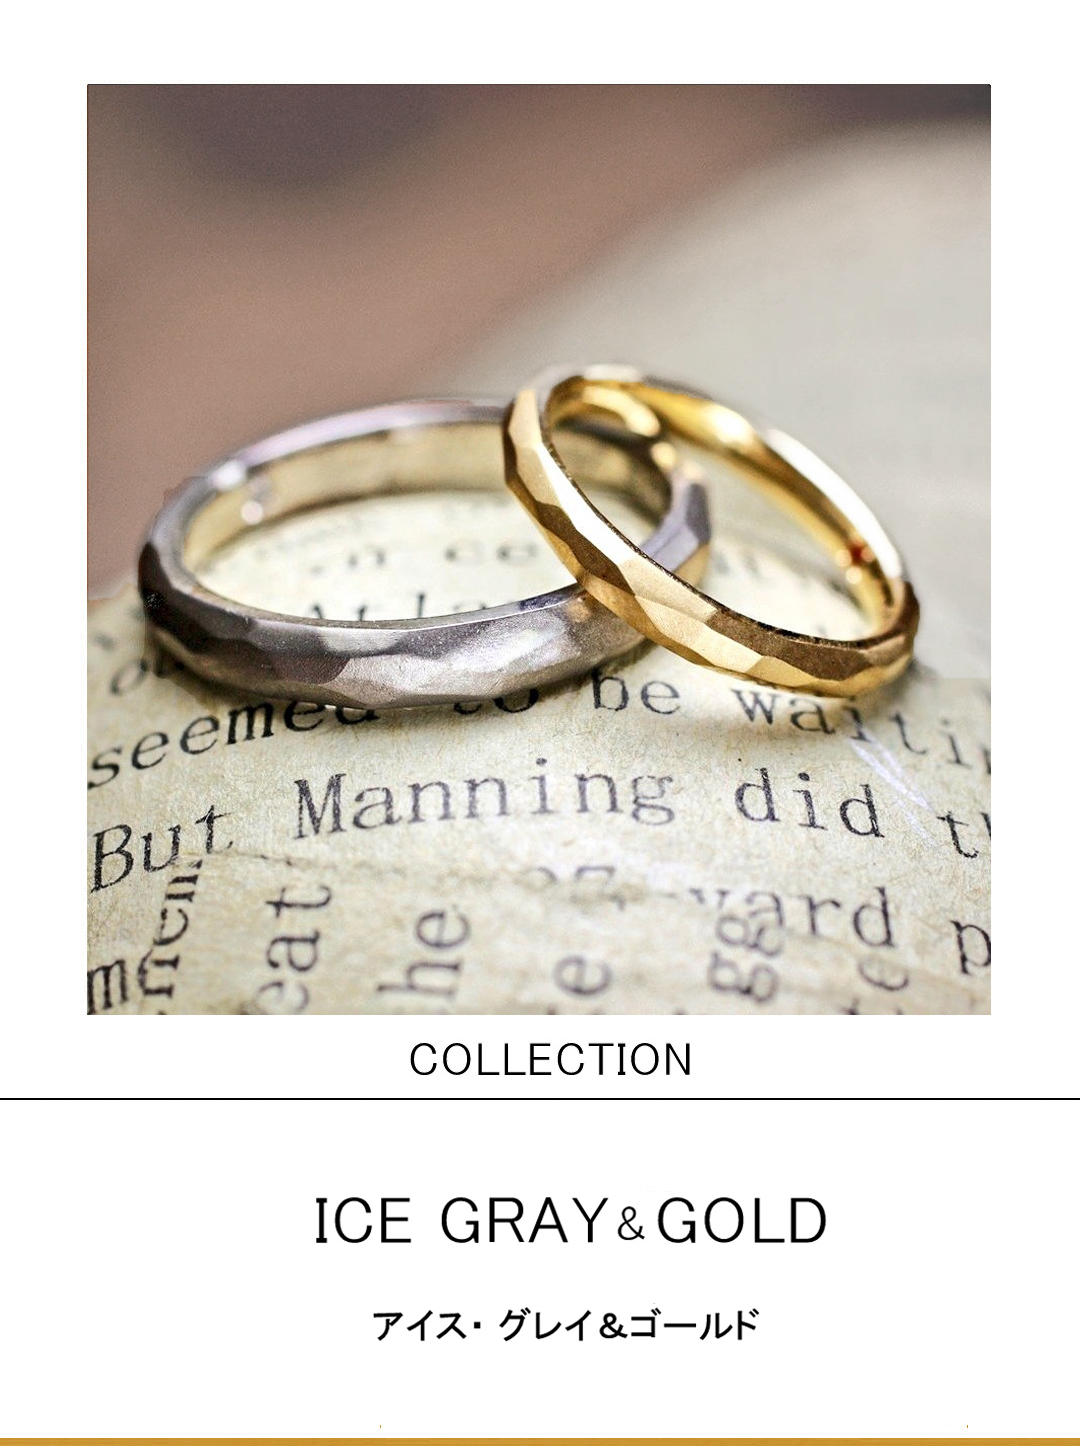 ゴールド＆グレーのリングを氷の様なテクスチャーで装飾した結婚指輪のサムネイル